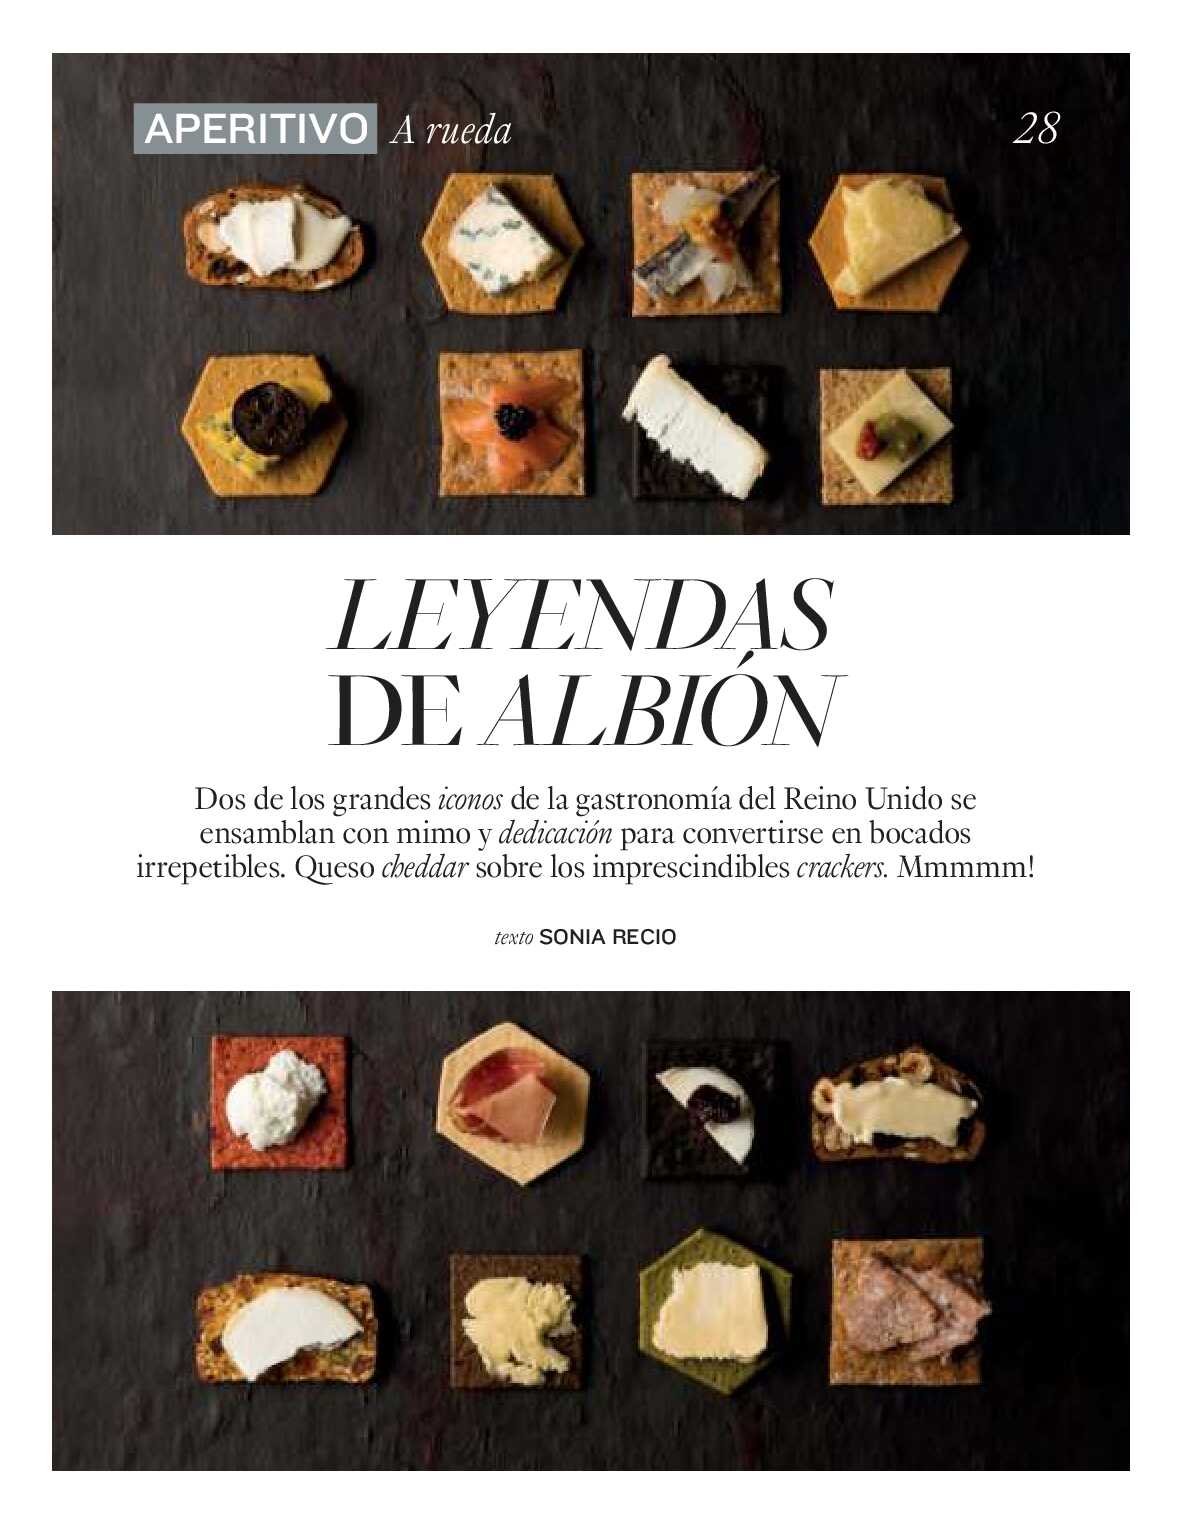 Gourmet magazine El Corte Inglés. Página 28